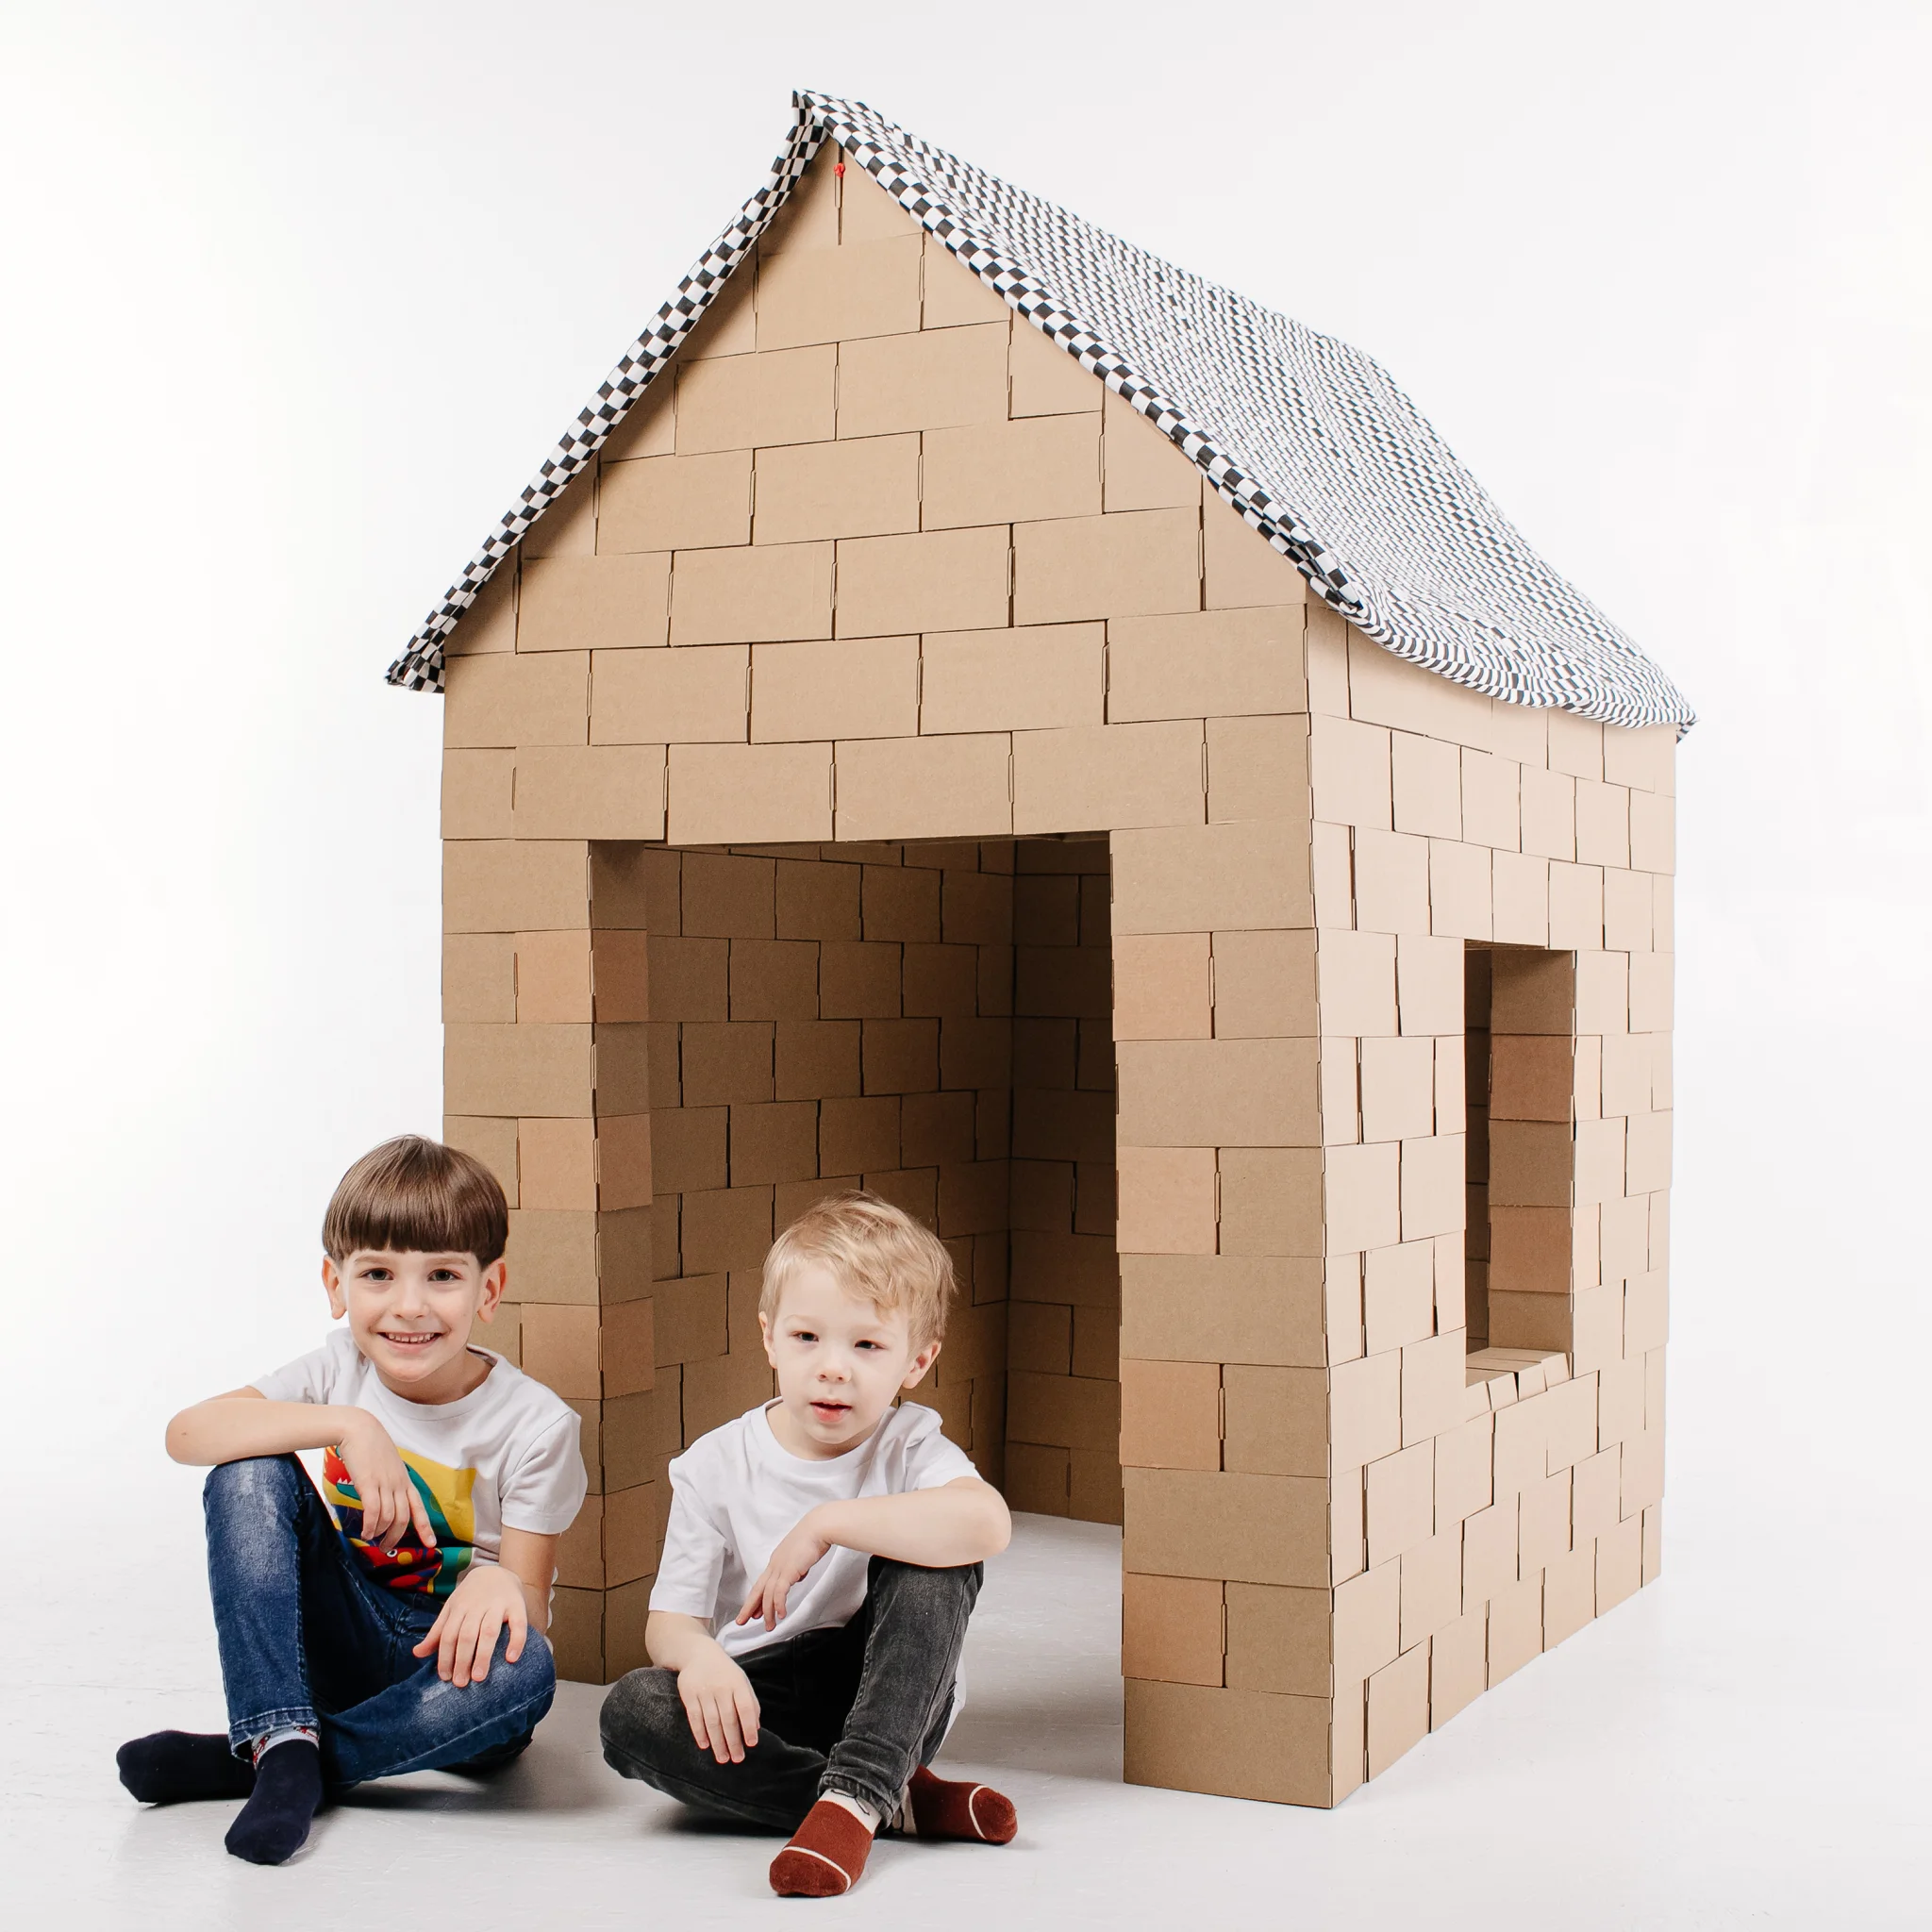 Cardboard Construction Kit Carpichiki Large Blocks 200 Parts eco toy